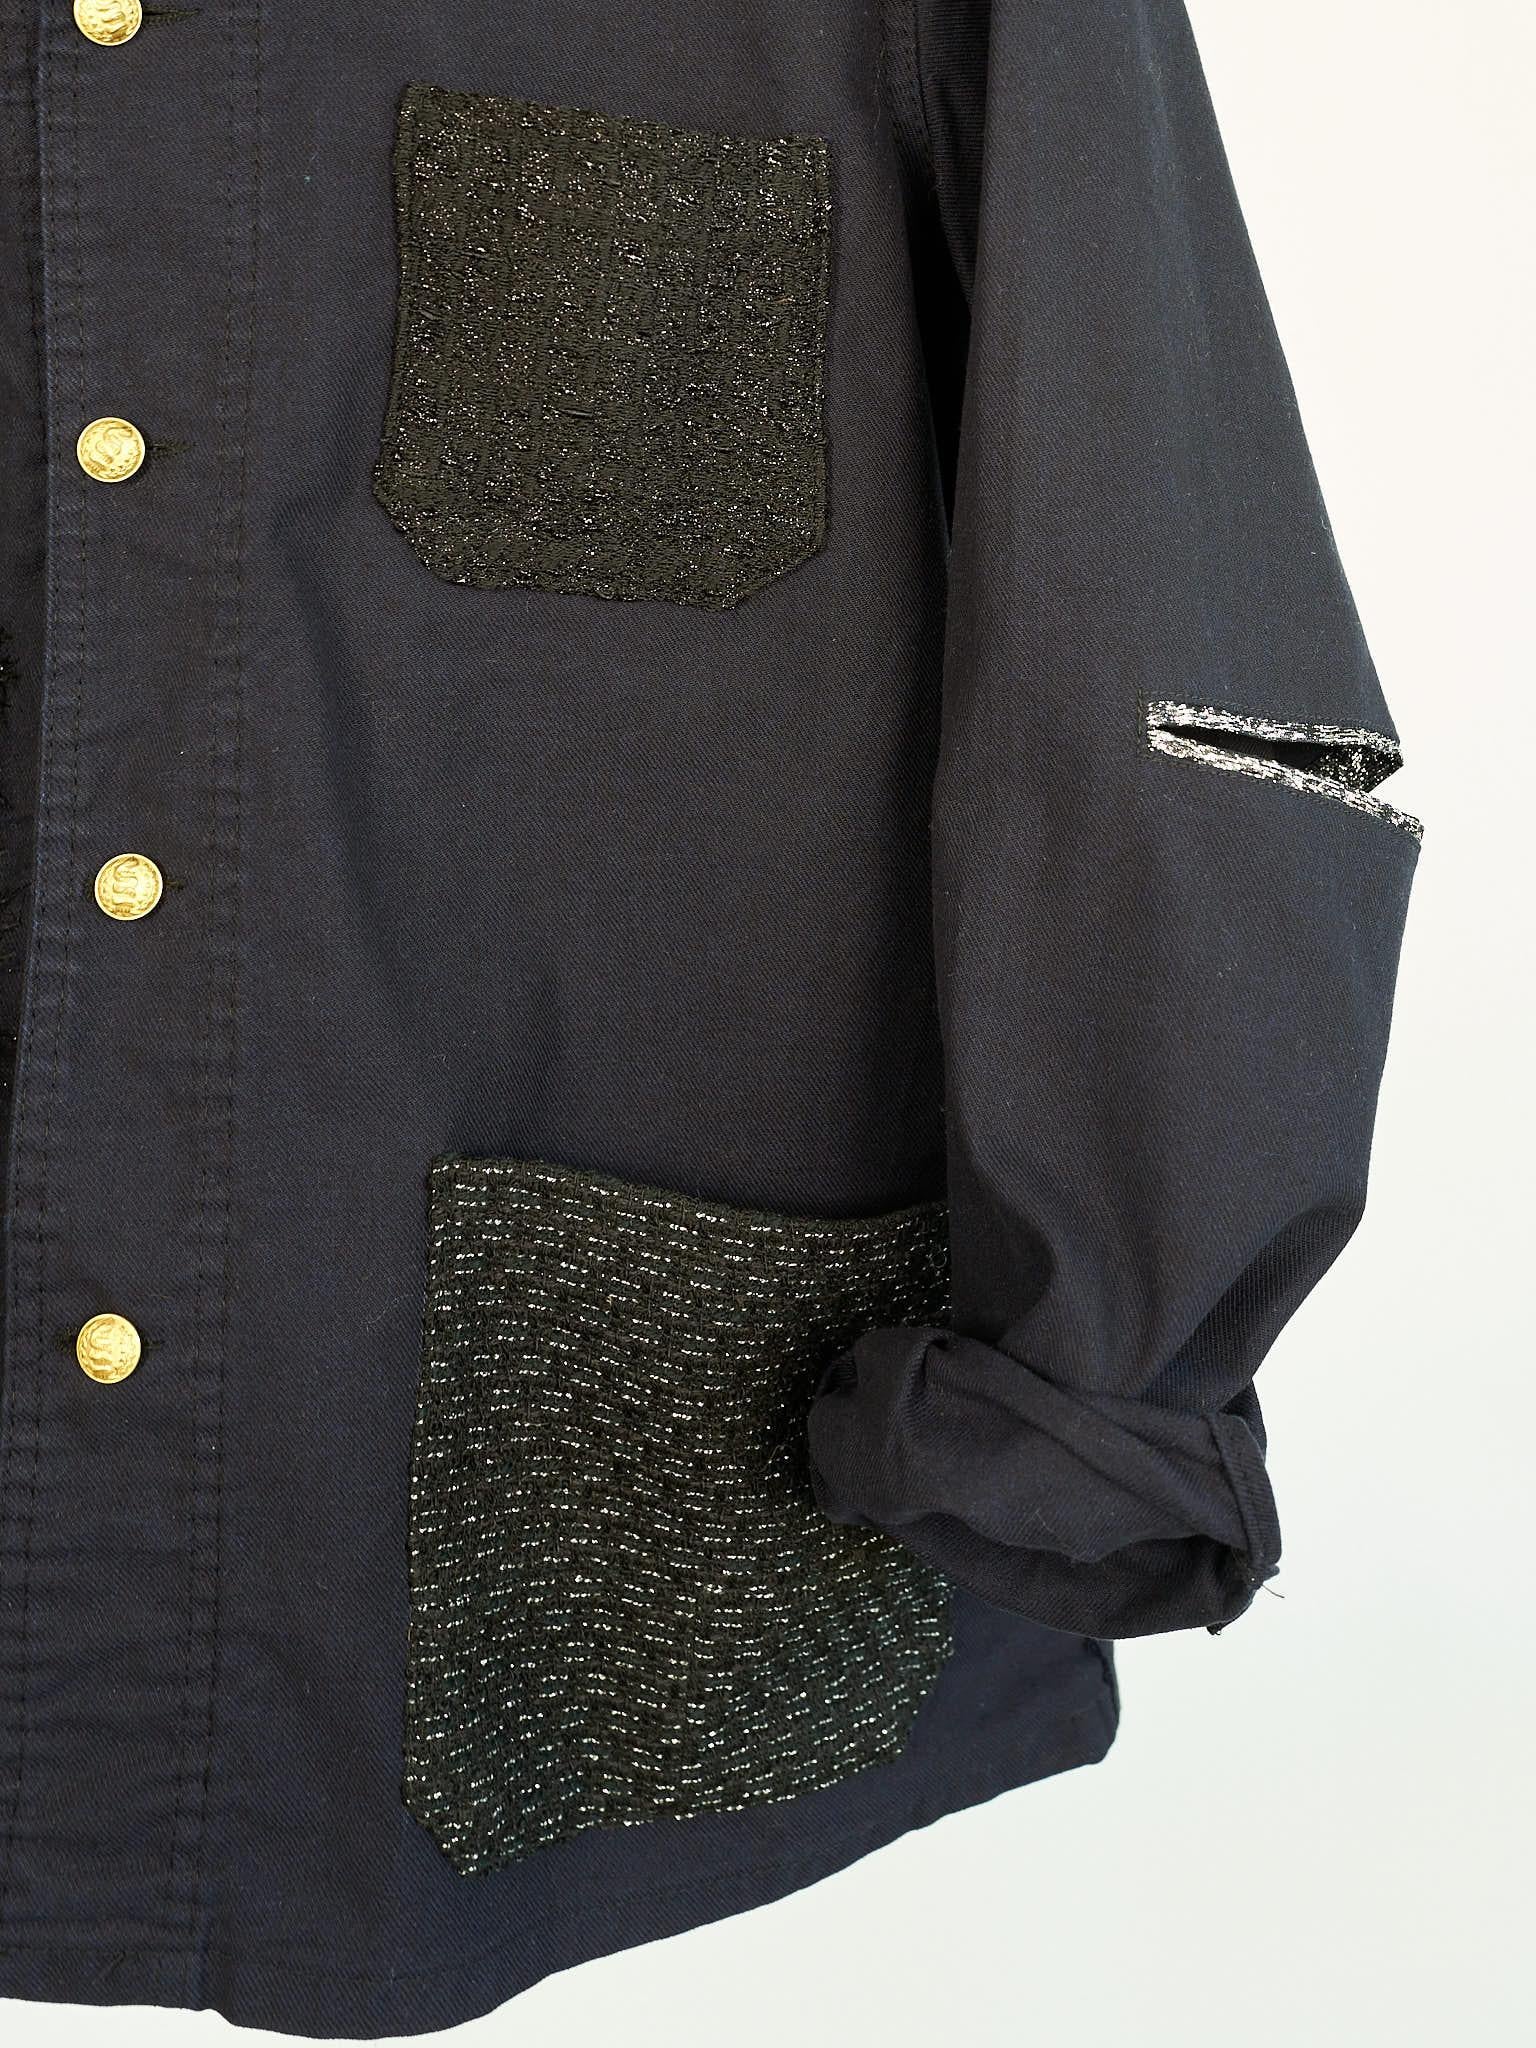 Black Fringe Tweed Jacket French Work Repurposed Vintage Dark Blue  J Dauphin